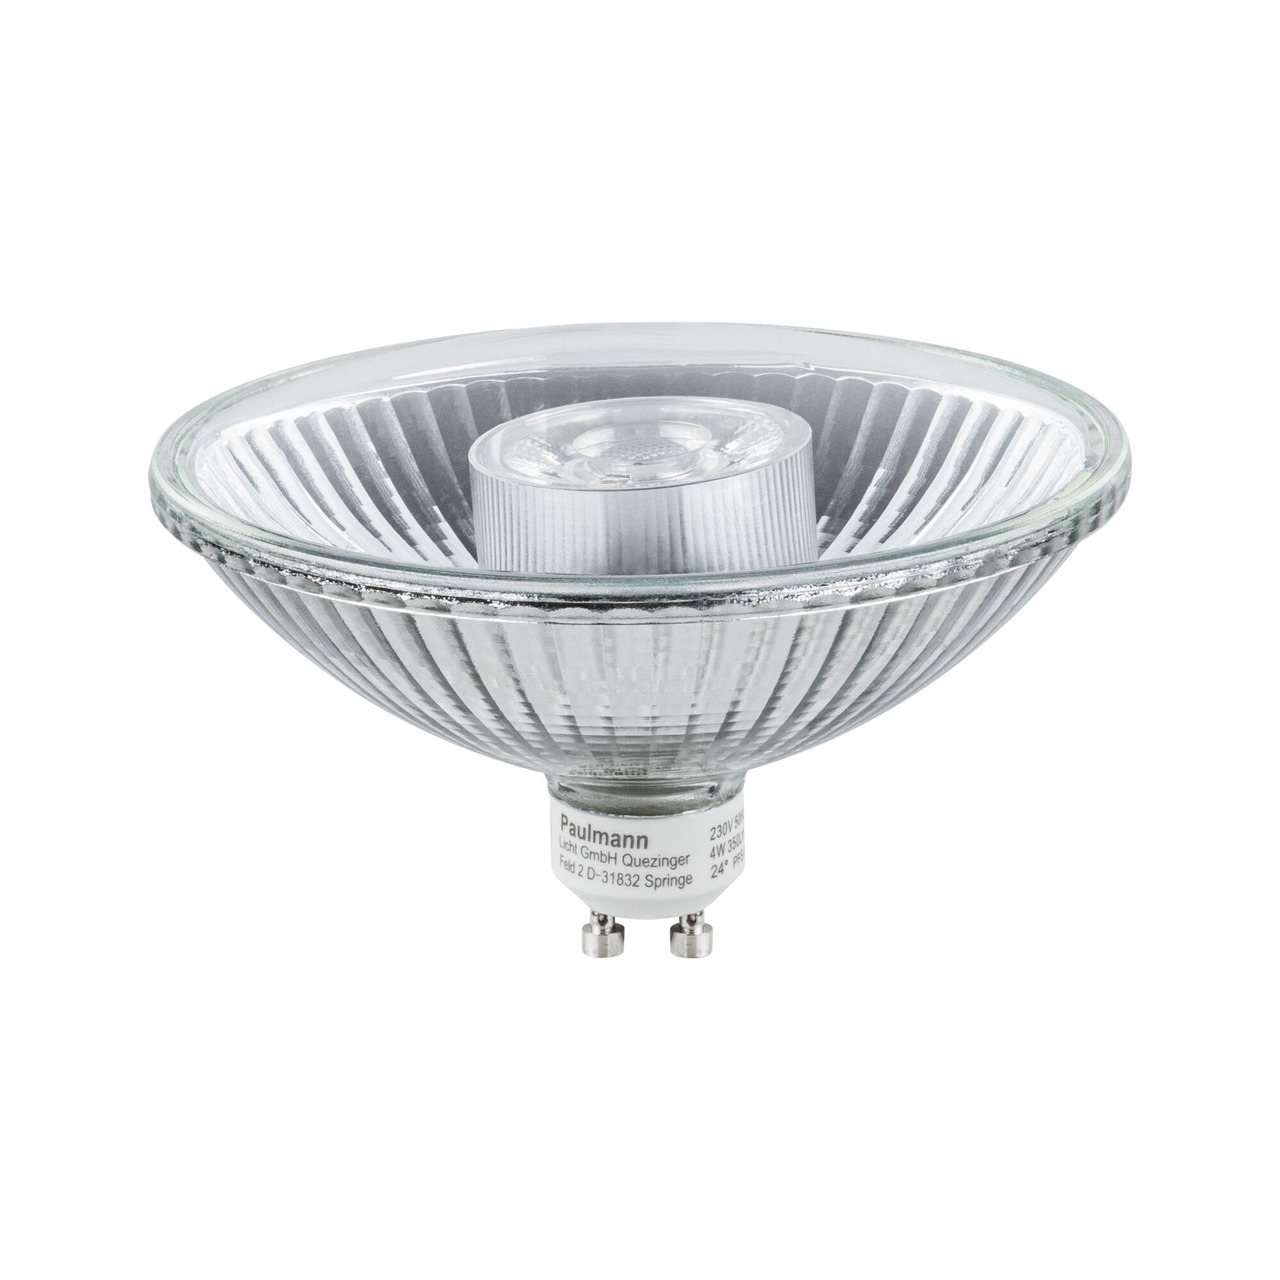 Paulmann 4-W-LED-Reflektorlampe- QPAR111 Form- GU10-Sockel- 350 lm- 24 - warmweiss- 2700 K